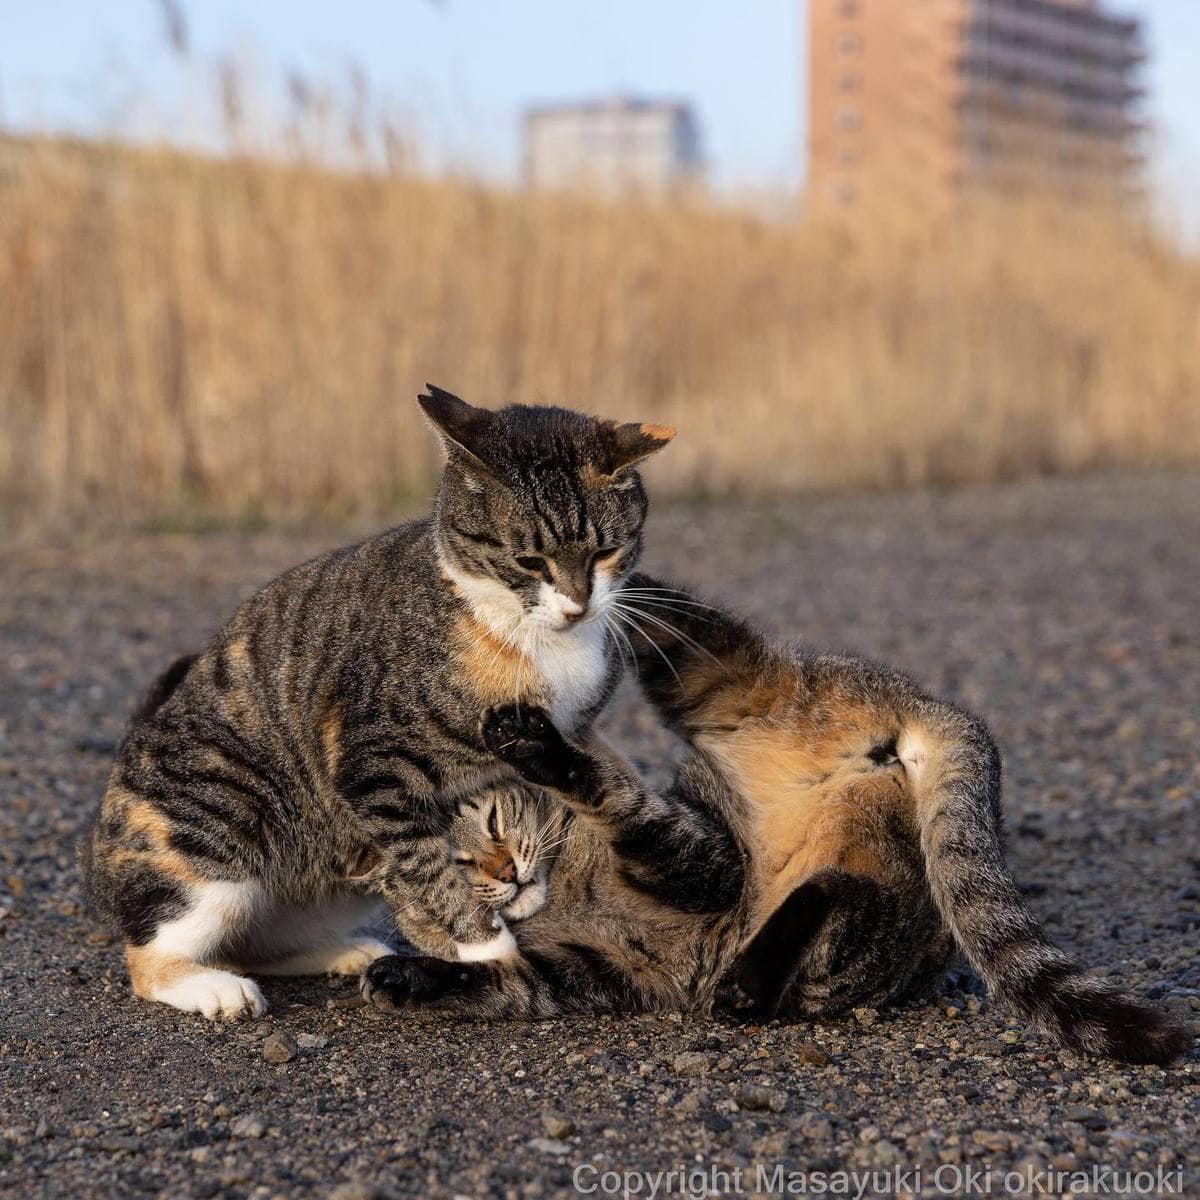 20 снимков уличных котов от японского фотографа, который как никто умеет запечатлевать харизму этих бродяг 67